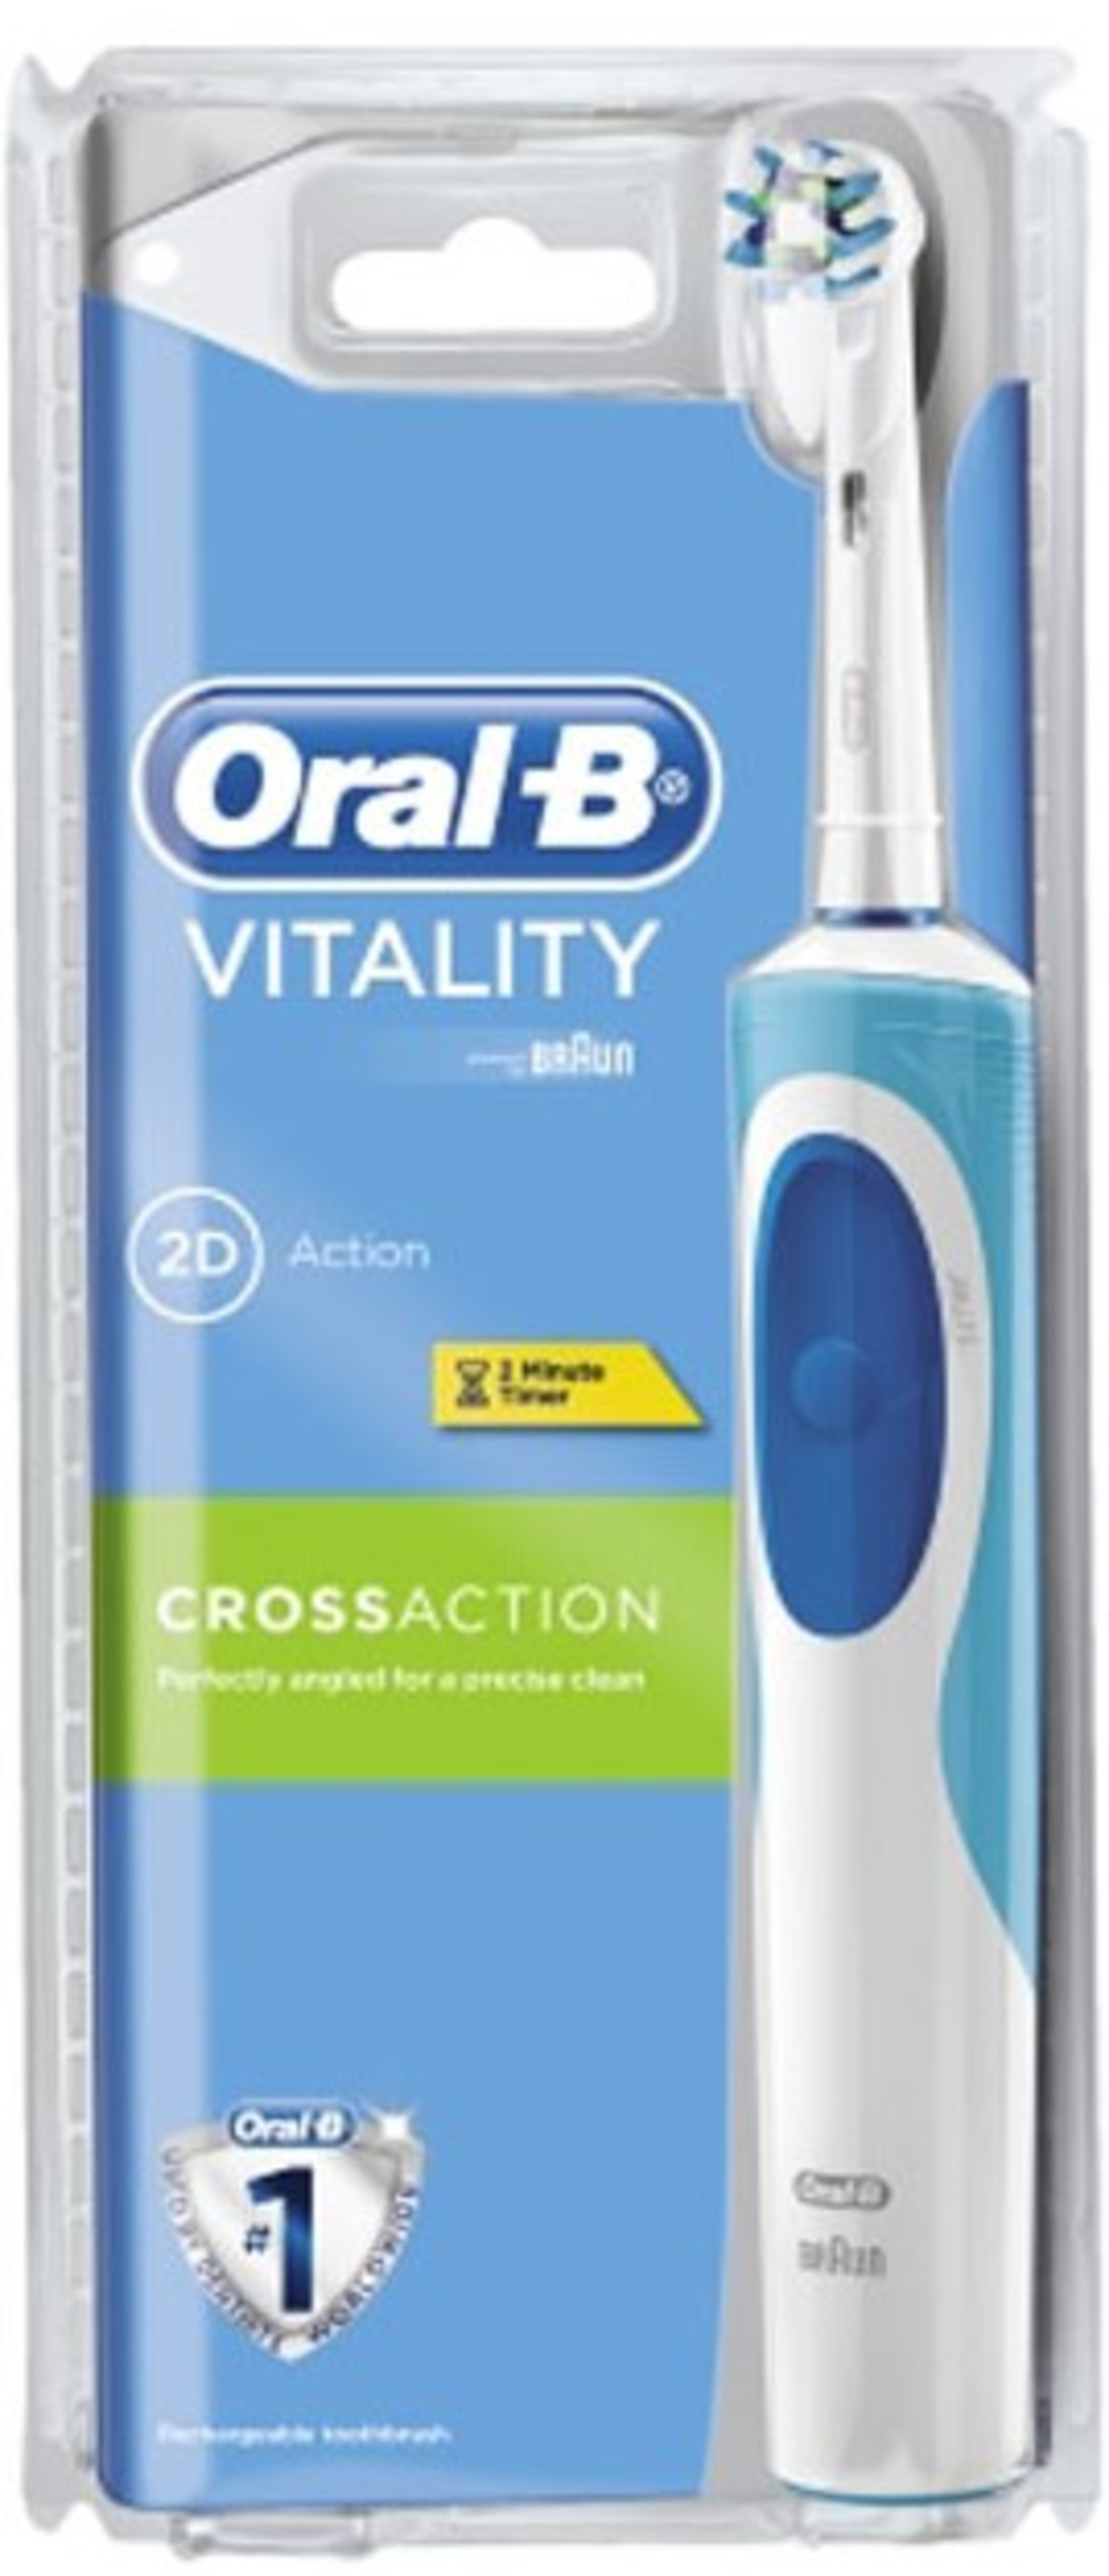 אורל-בי ויטליטי מברשת שיניים חשמלית Oral-B Vitality